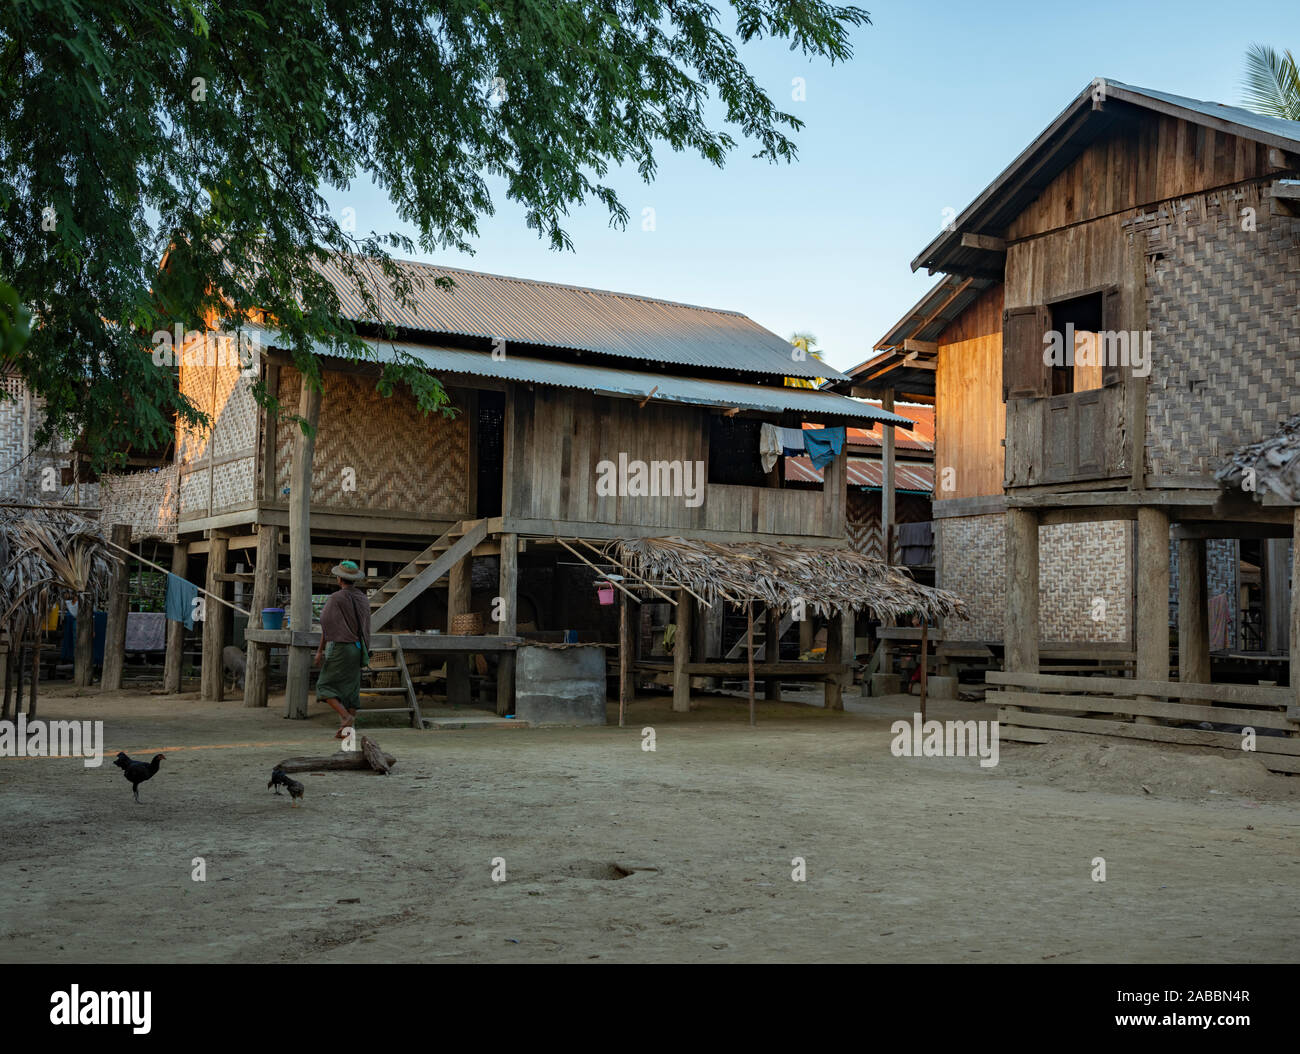 Maisons de village typiques Birmans dans le nord-ouest de Myanmar (Birmanie) le long de la rivière Chindwin sur pilotis avec de l'étain les toits et façades en bois/bambou tressé Banque D'Images